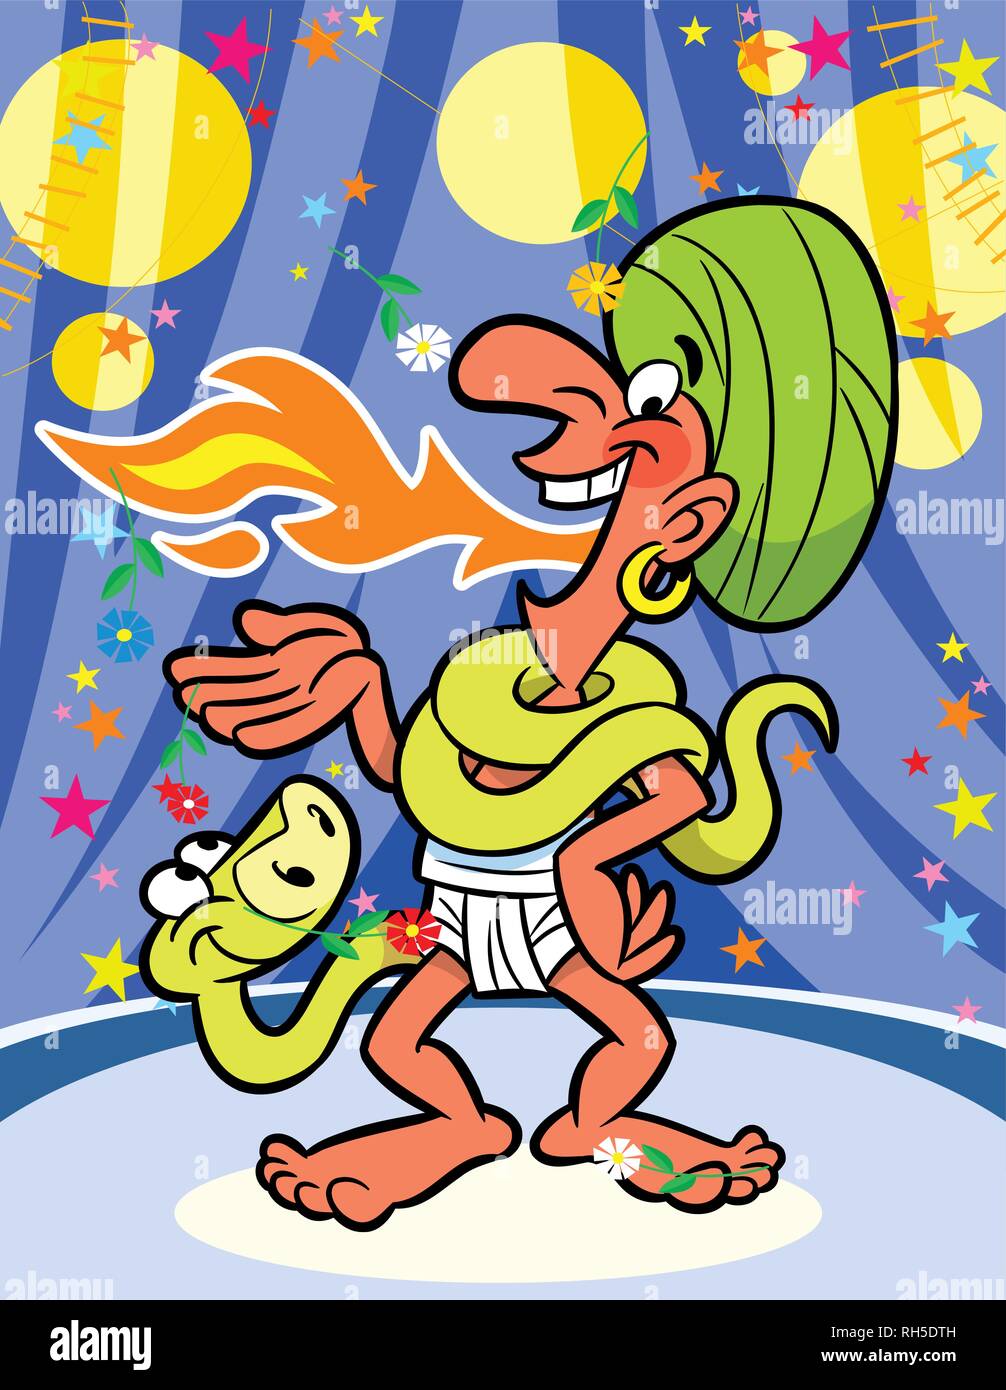 Au cirque fakir jongler avec le feu et le serpent. Illustration faite sur des calques distincts dans un style de dessin animé. Illustration de Vecteur